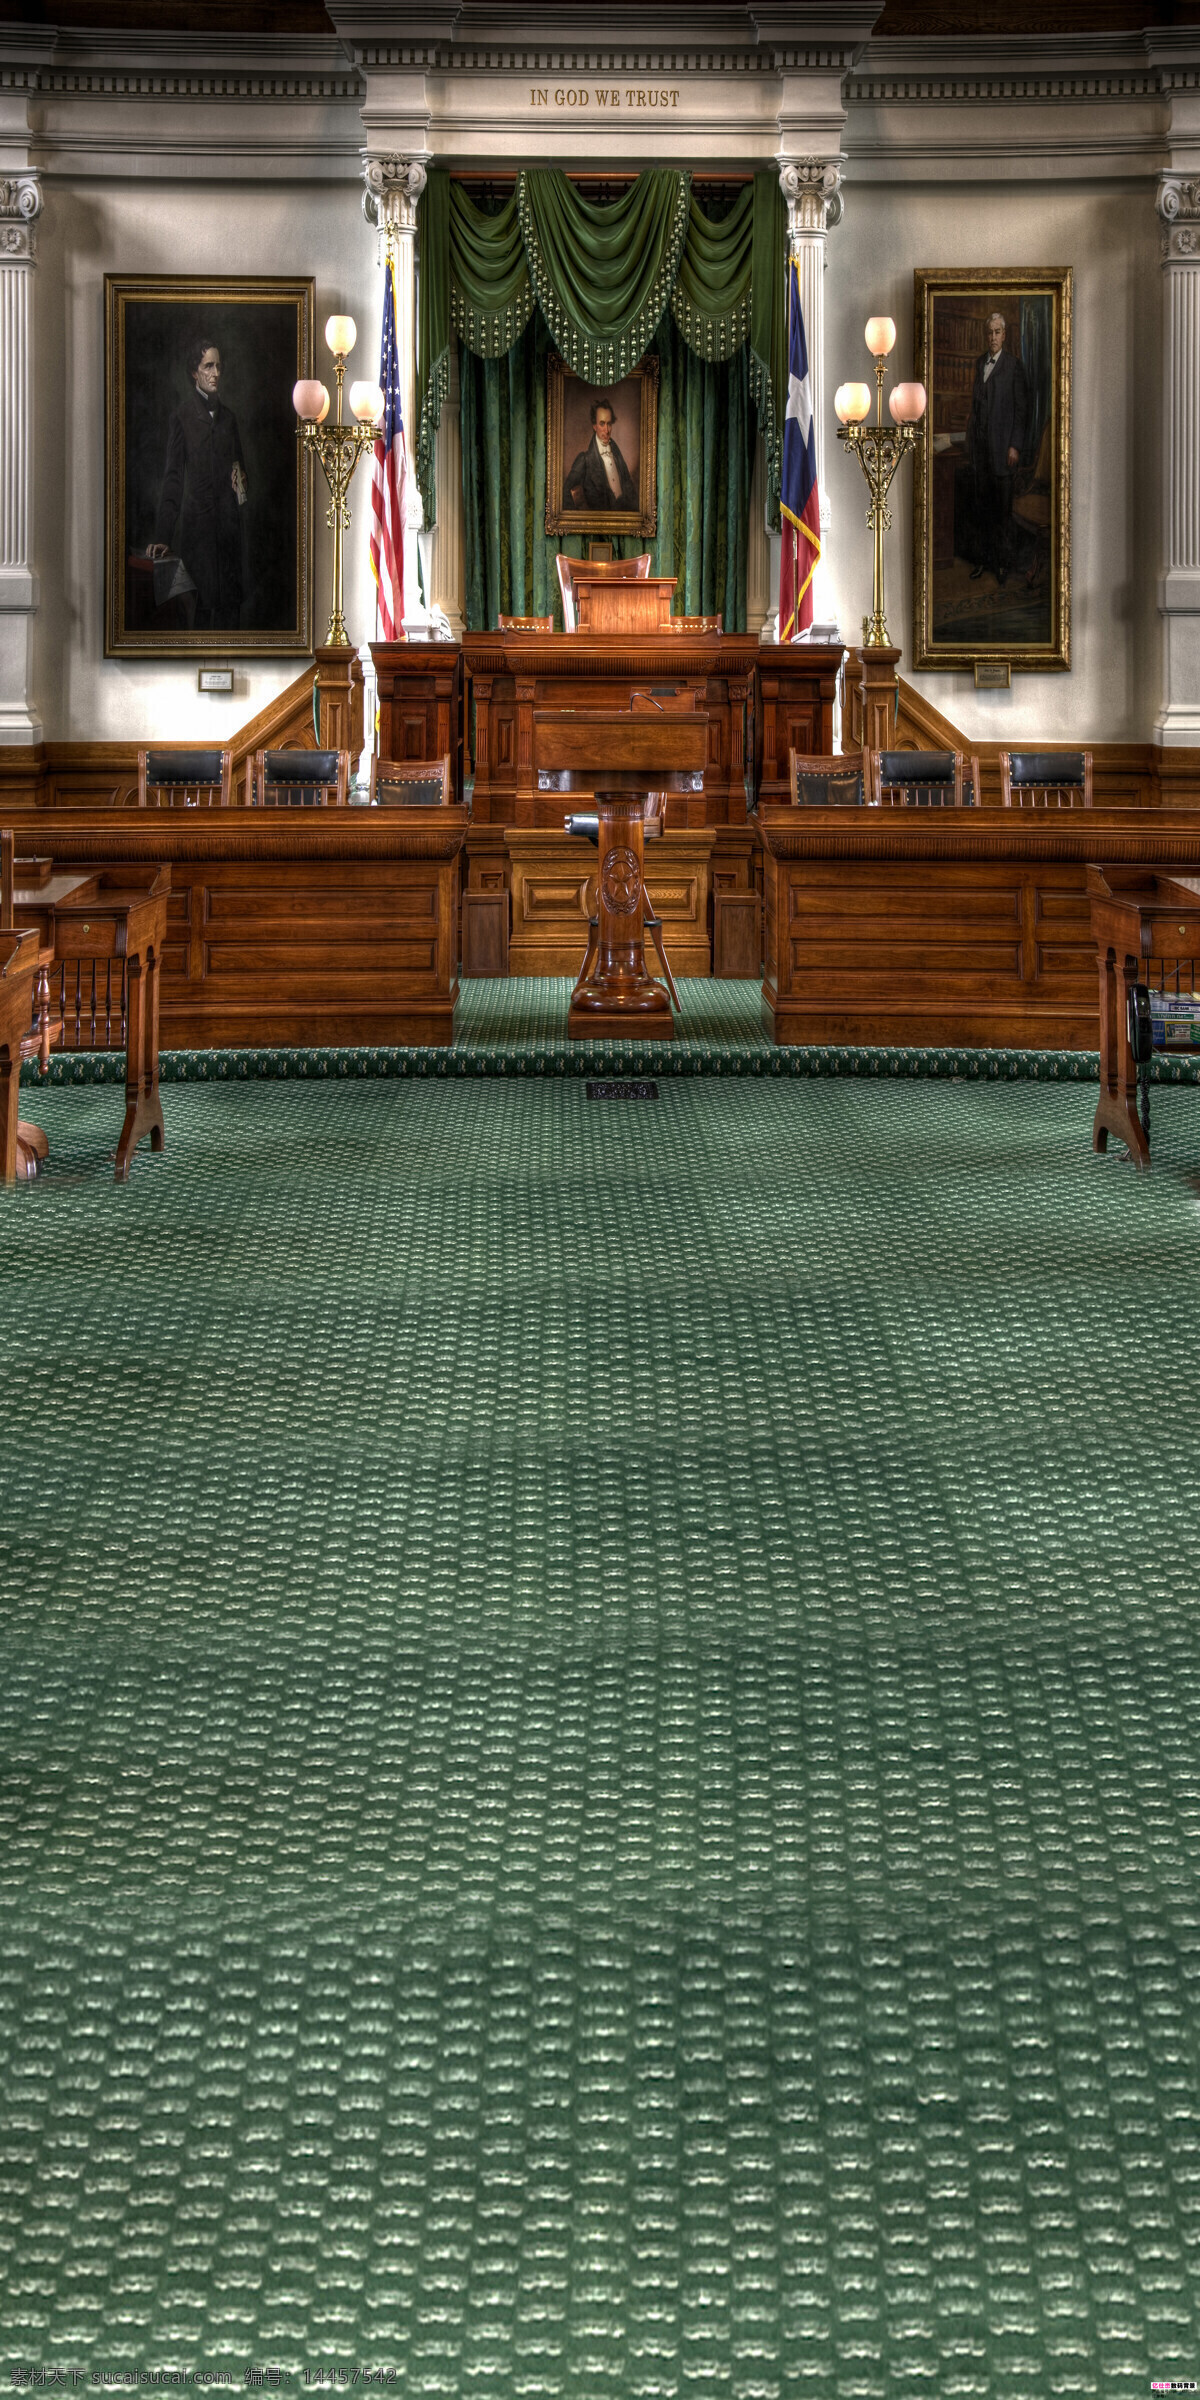 超大 尺寸 美国 法庭 美国法庭 油画 审判 法官 议事厅 建筑园林 室内摄影